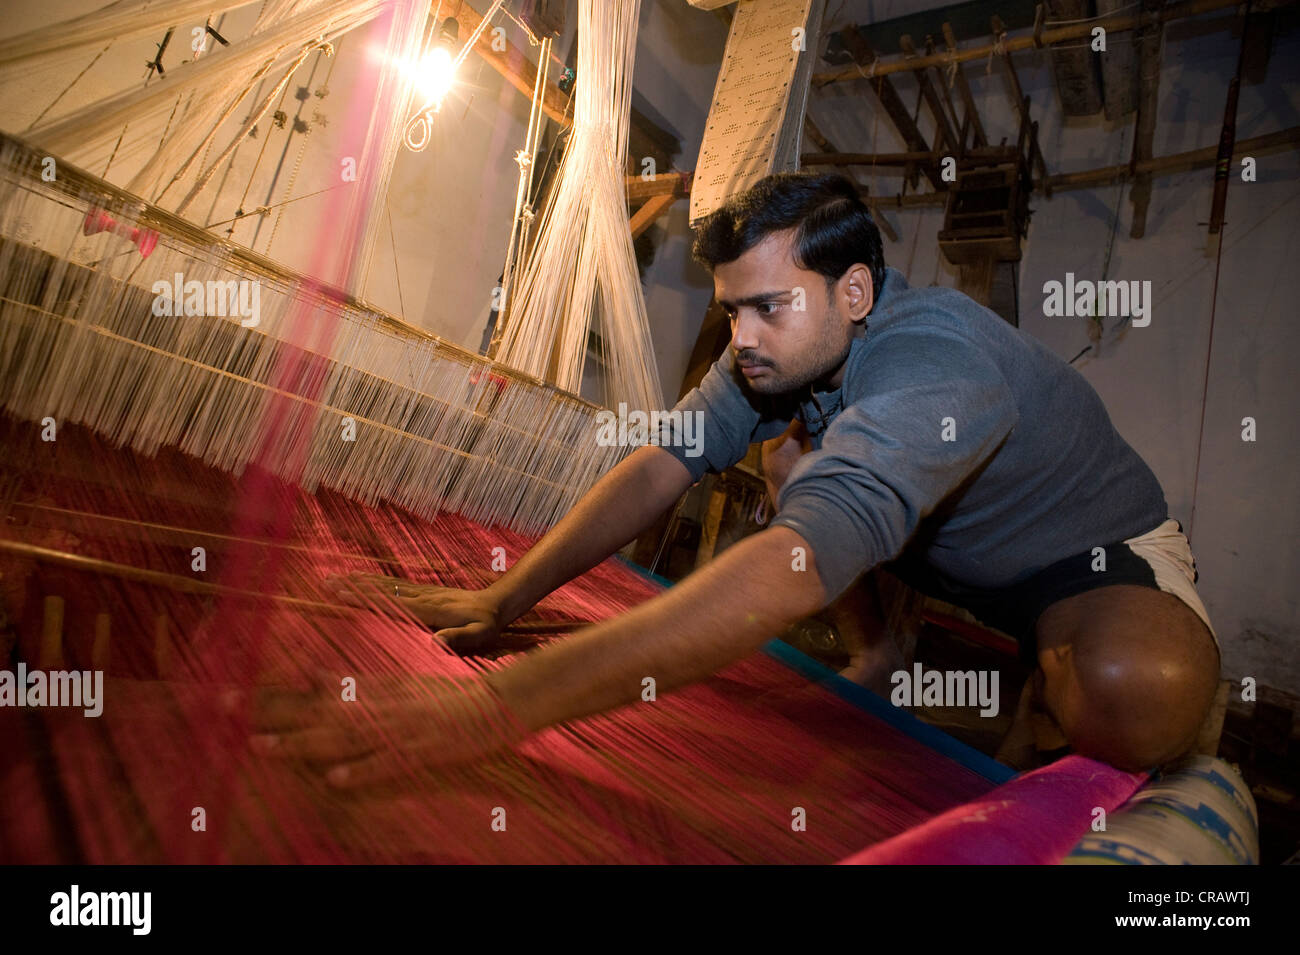 L'homme à un métier à tisser le tissage traditionnel de la soie Benares, vieille ville de Varanasi, Uttar Pradesh, Inde, Asie Banque D'Images